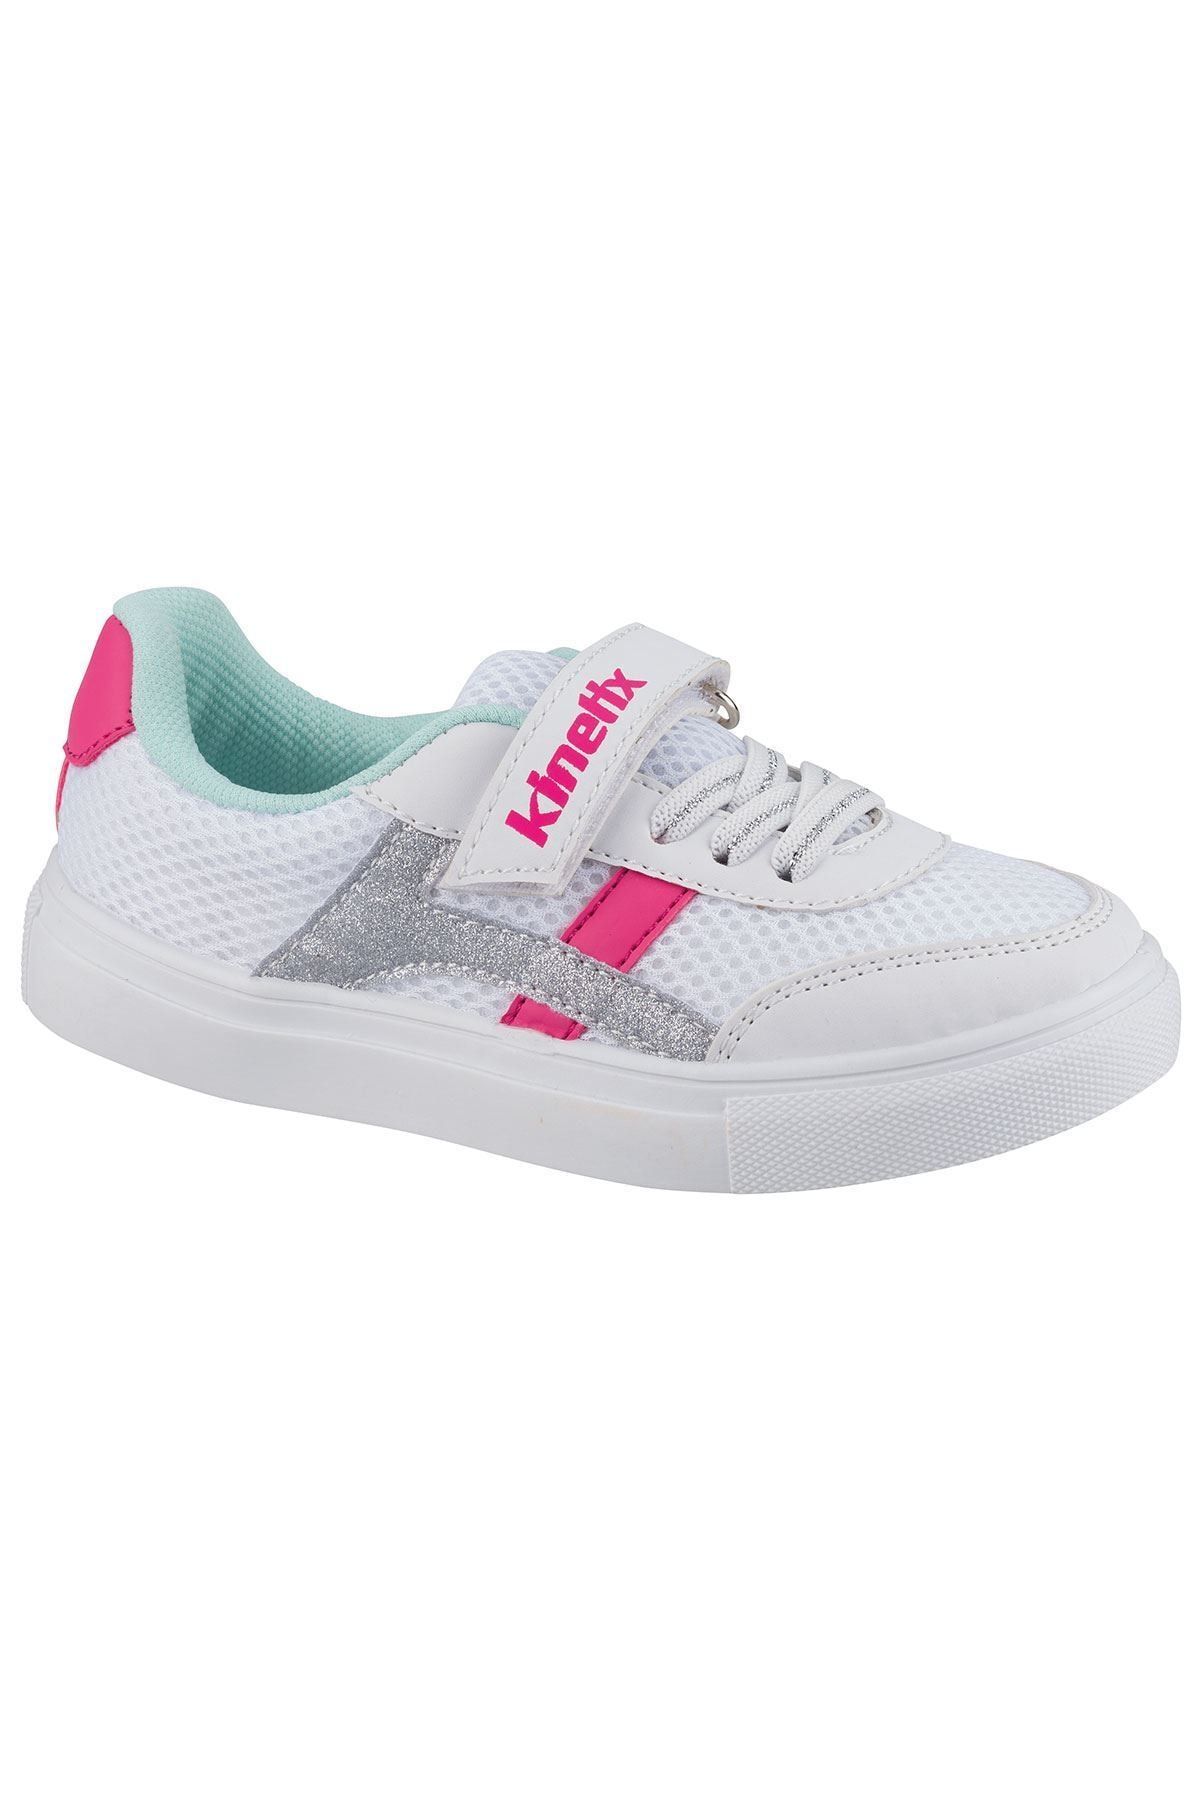 Kinetix Beyaz - As00556771 100606262 Remark 1fx Kız Çocuk Spor Ayakkabı